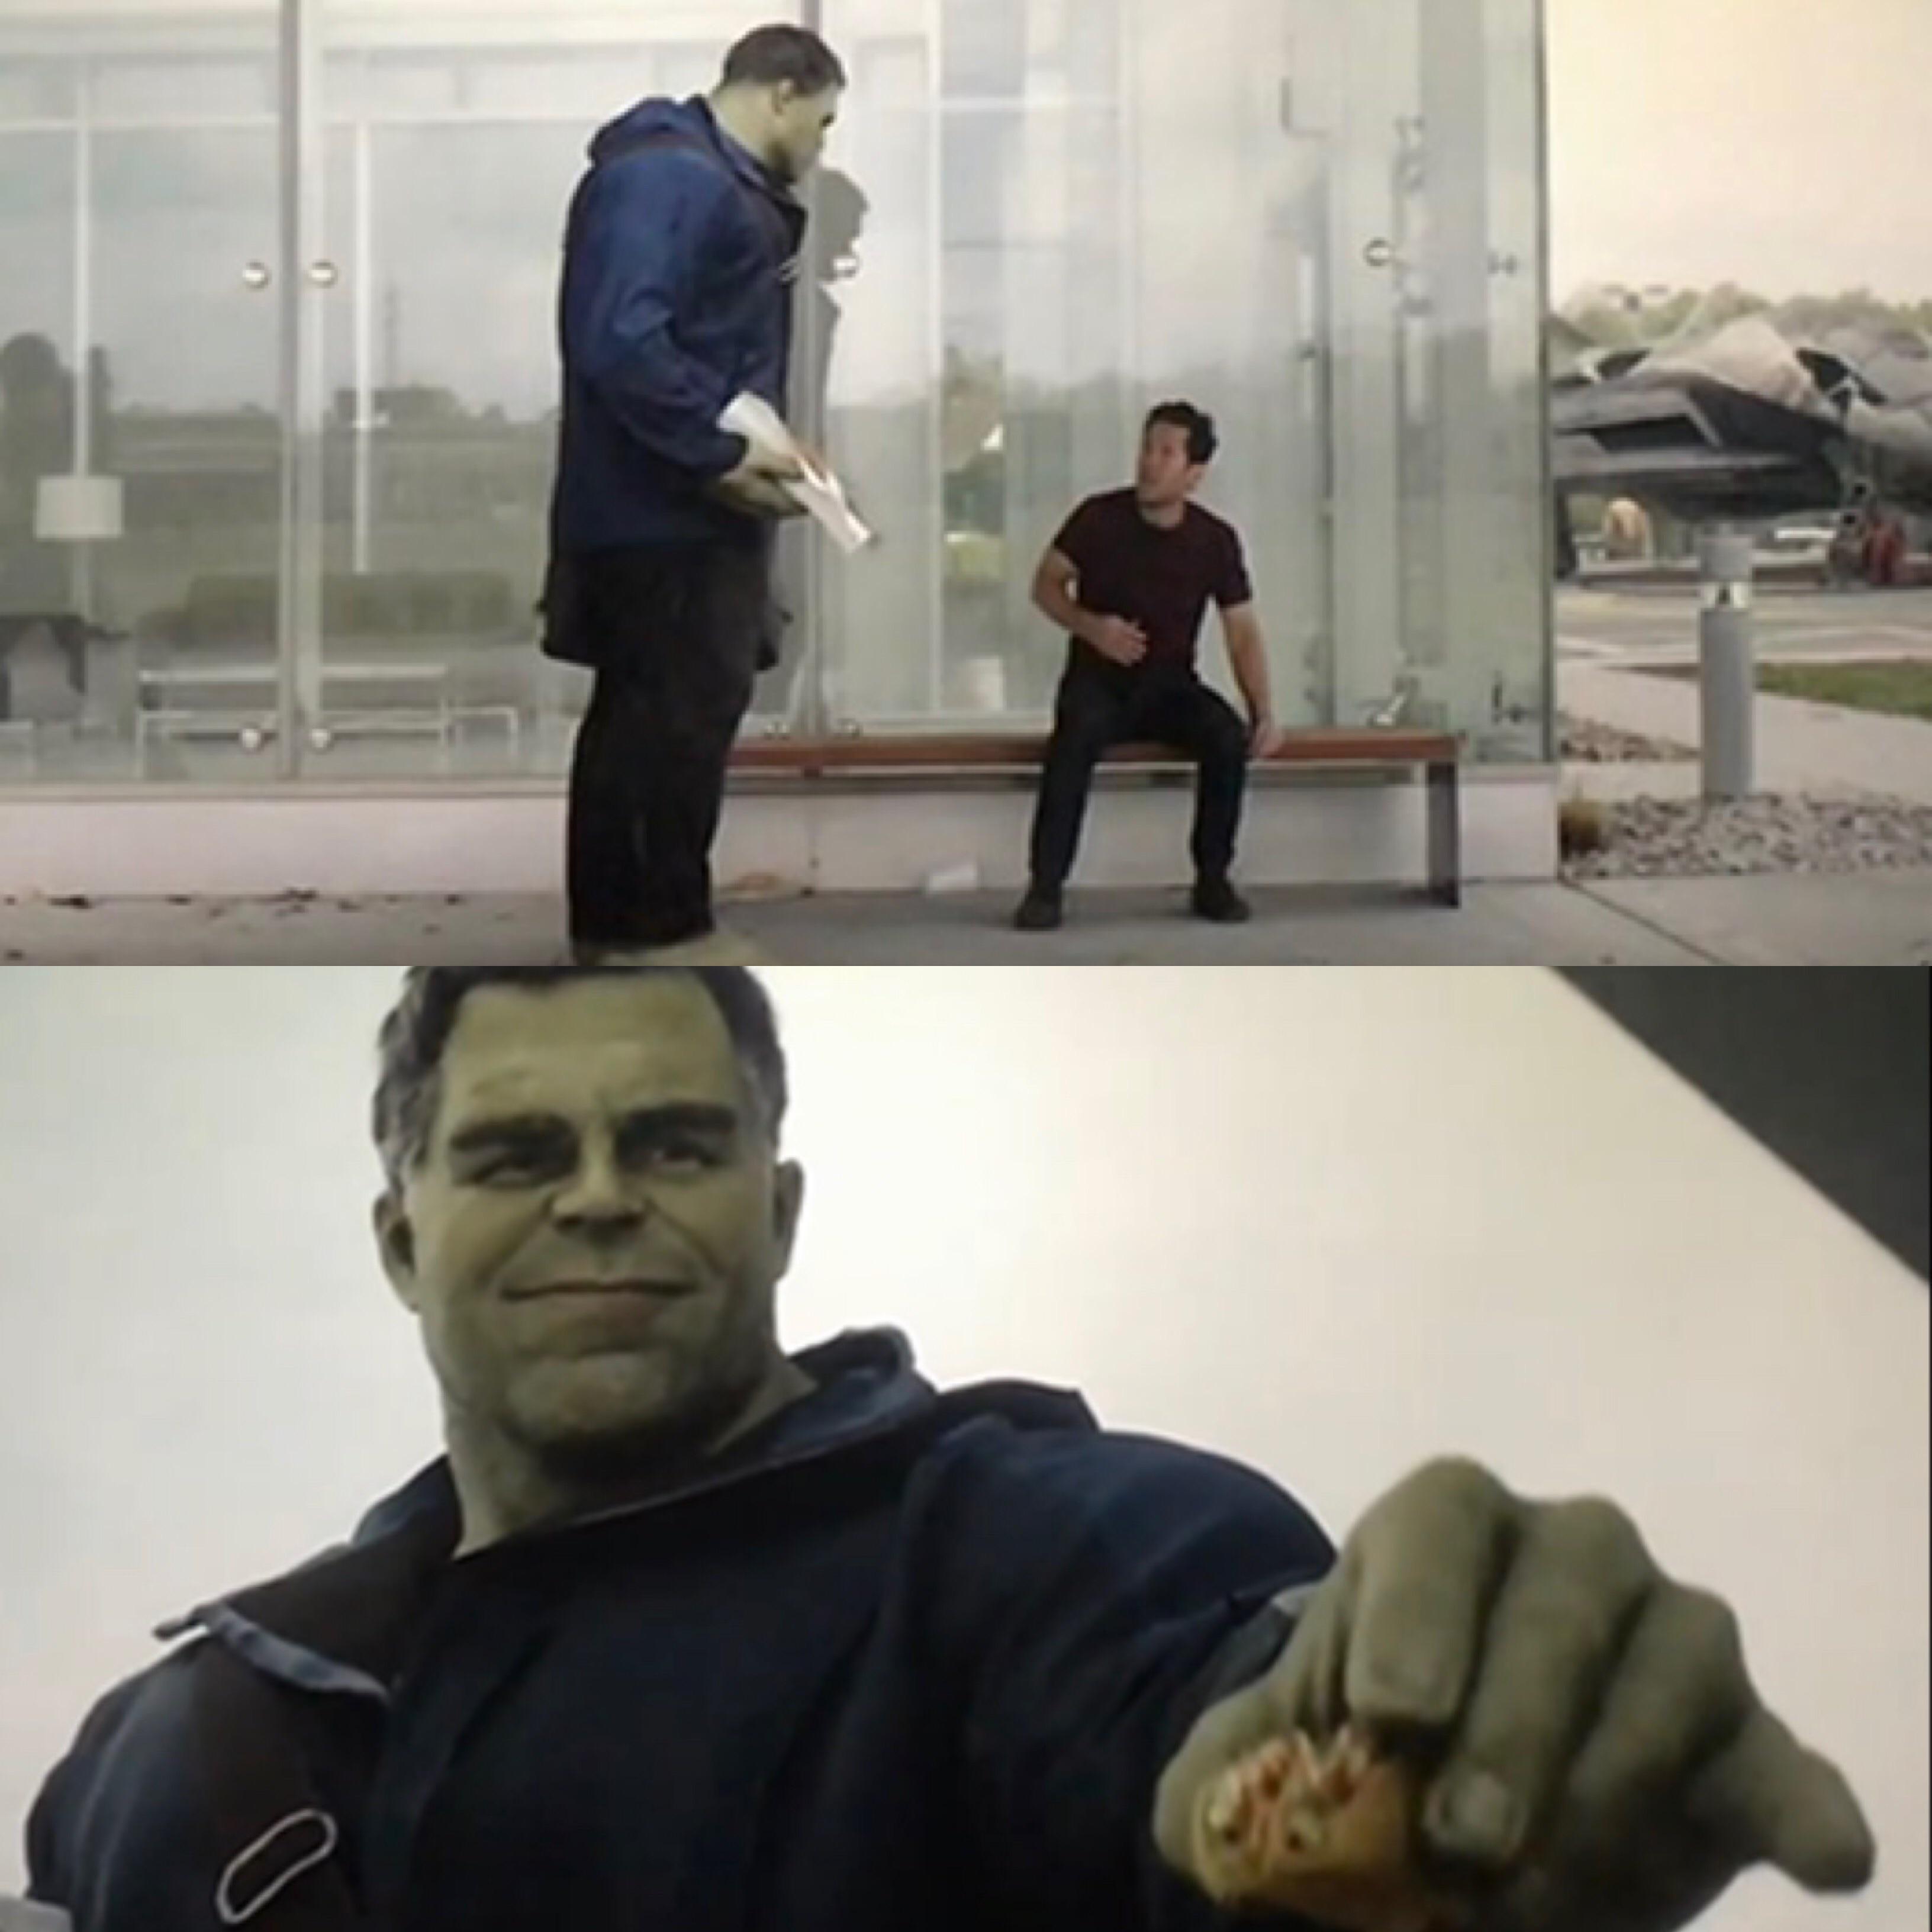 Hulk gives ant-man a taco. 